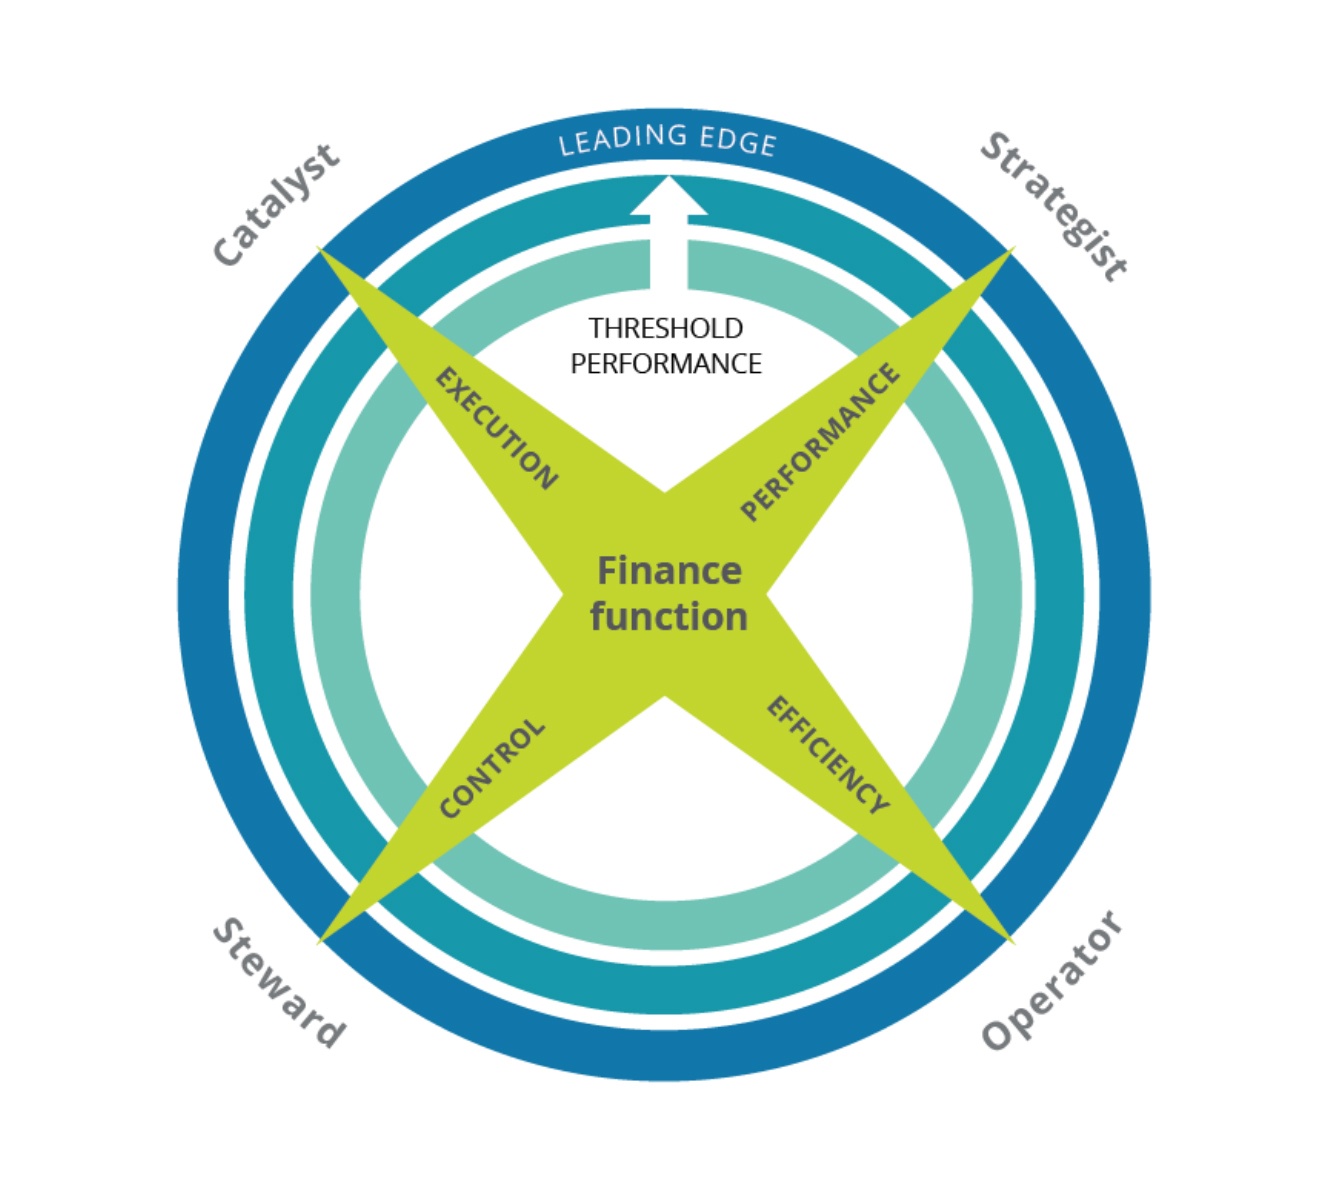 Delotte “Four Faces of the CFO’ Framework